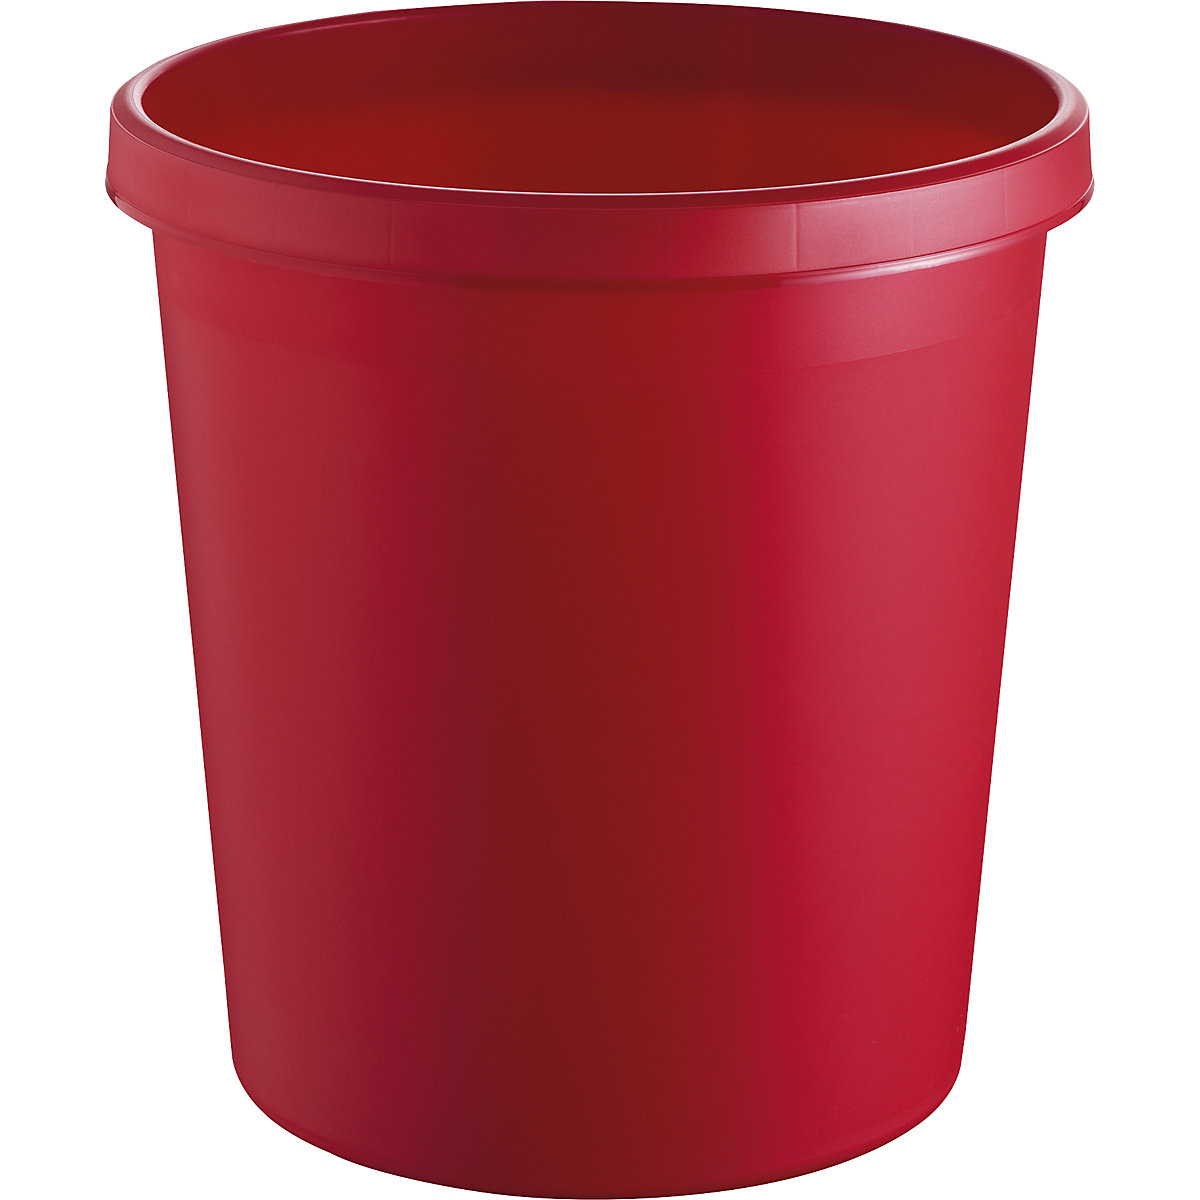 helit – Corbeille à papier en plastique, capacité 18 l, h x Ø 320 x 310 mm, rouge, lot de 15